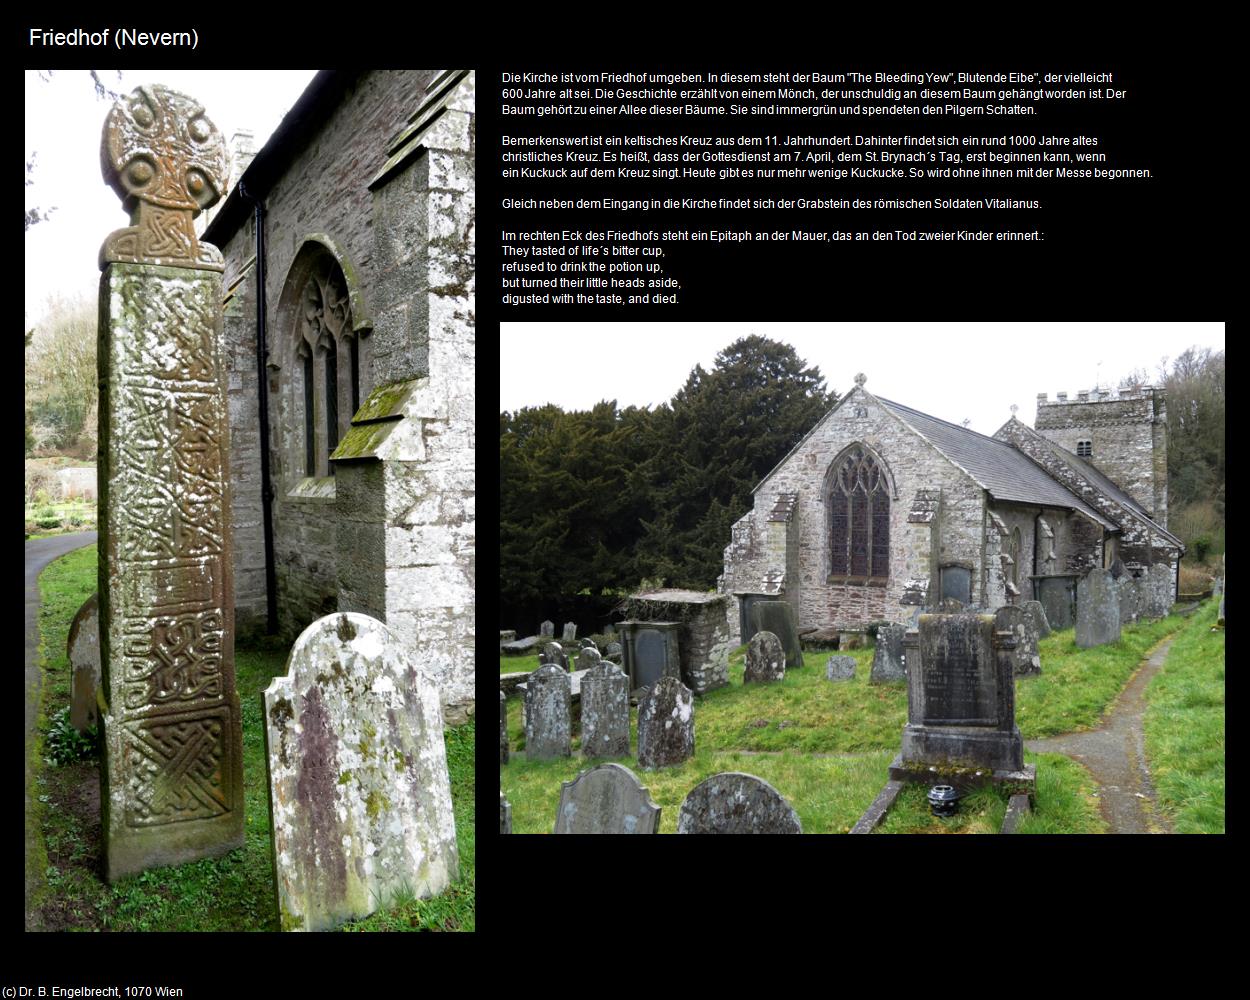 Friedhof (Nevern, Wales) in Kulturatlas-ENGLAND und WALES